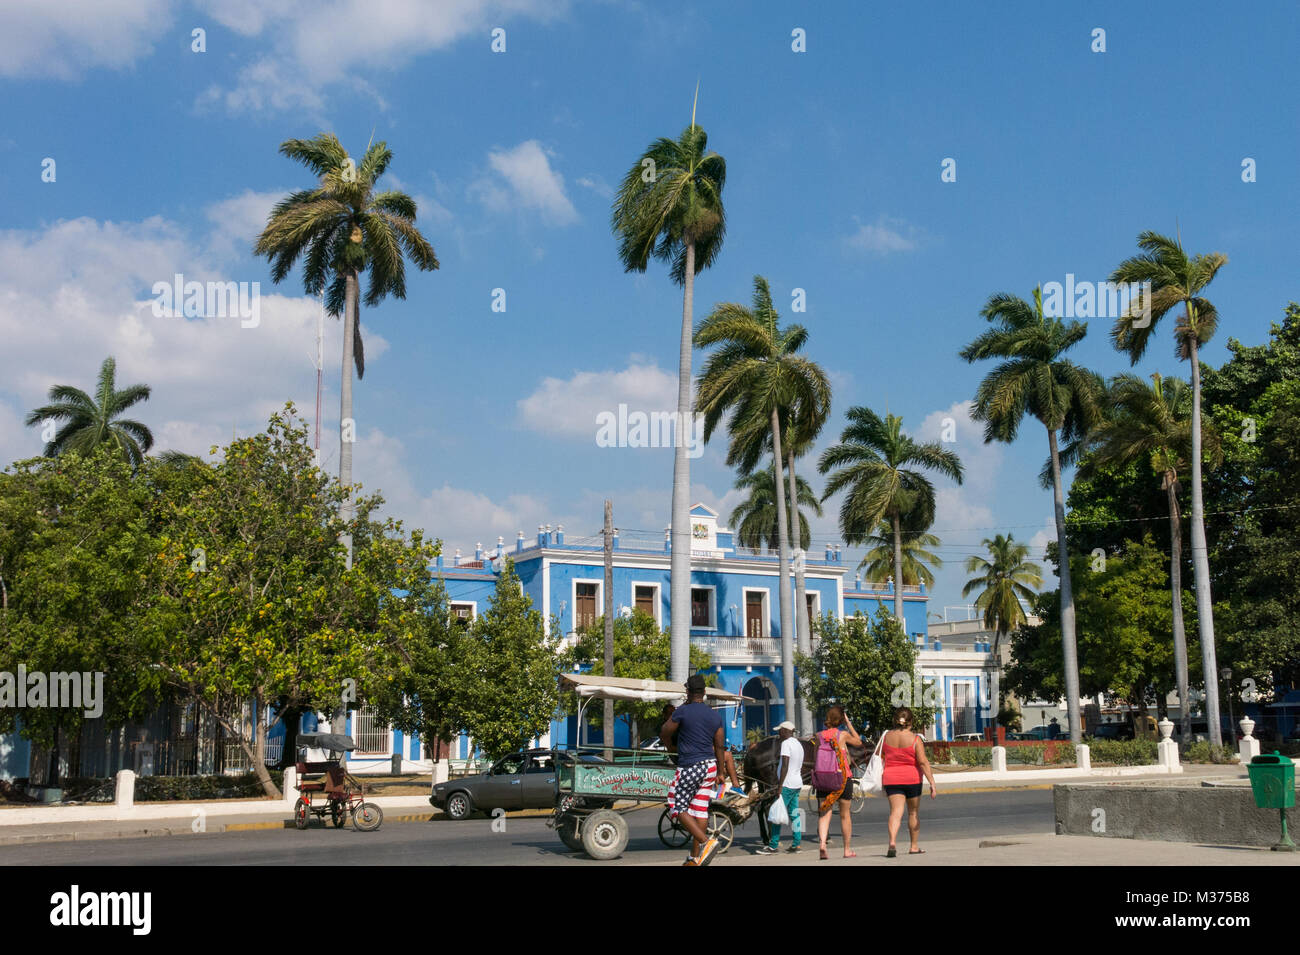 CIENFUEGOS, CUBA - 3 janvier 2017 : Jose Marti Park, la place principale de Cienfuegos, en face de la Purisima Concepcion cathédrale. La ville de Cienfuegos, Banque D'Images